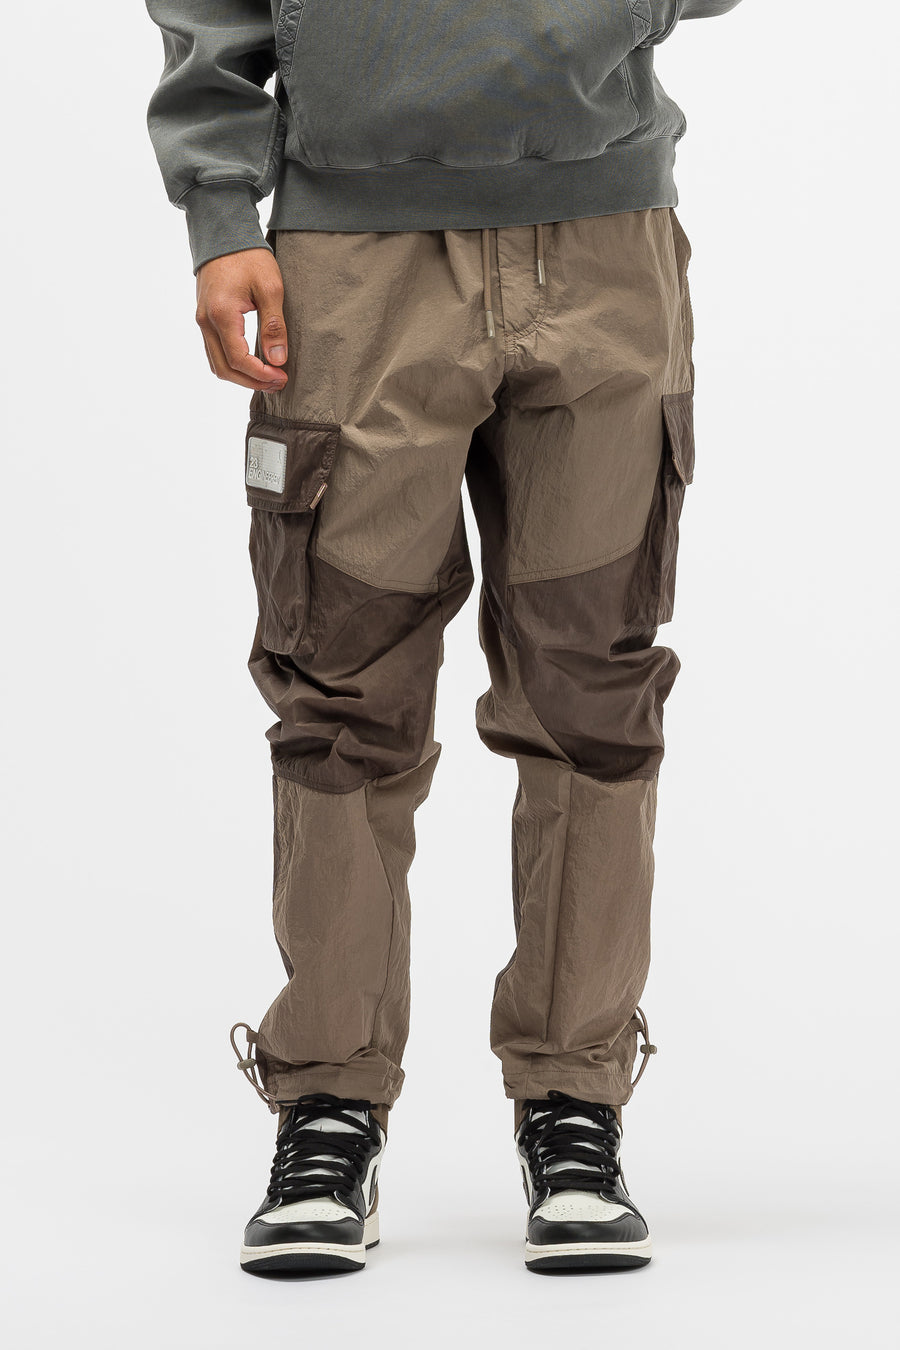 jordan 23 engineered pants grey